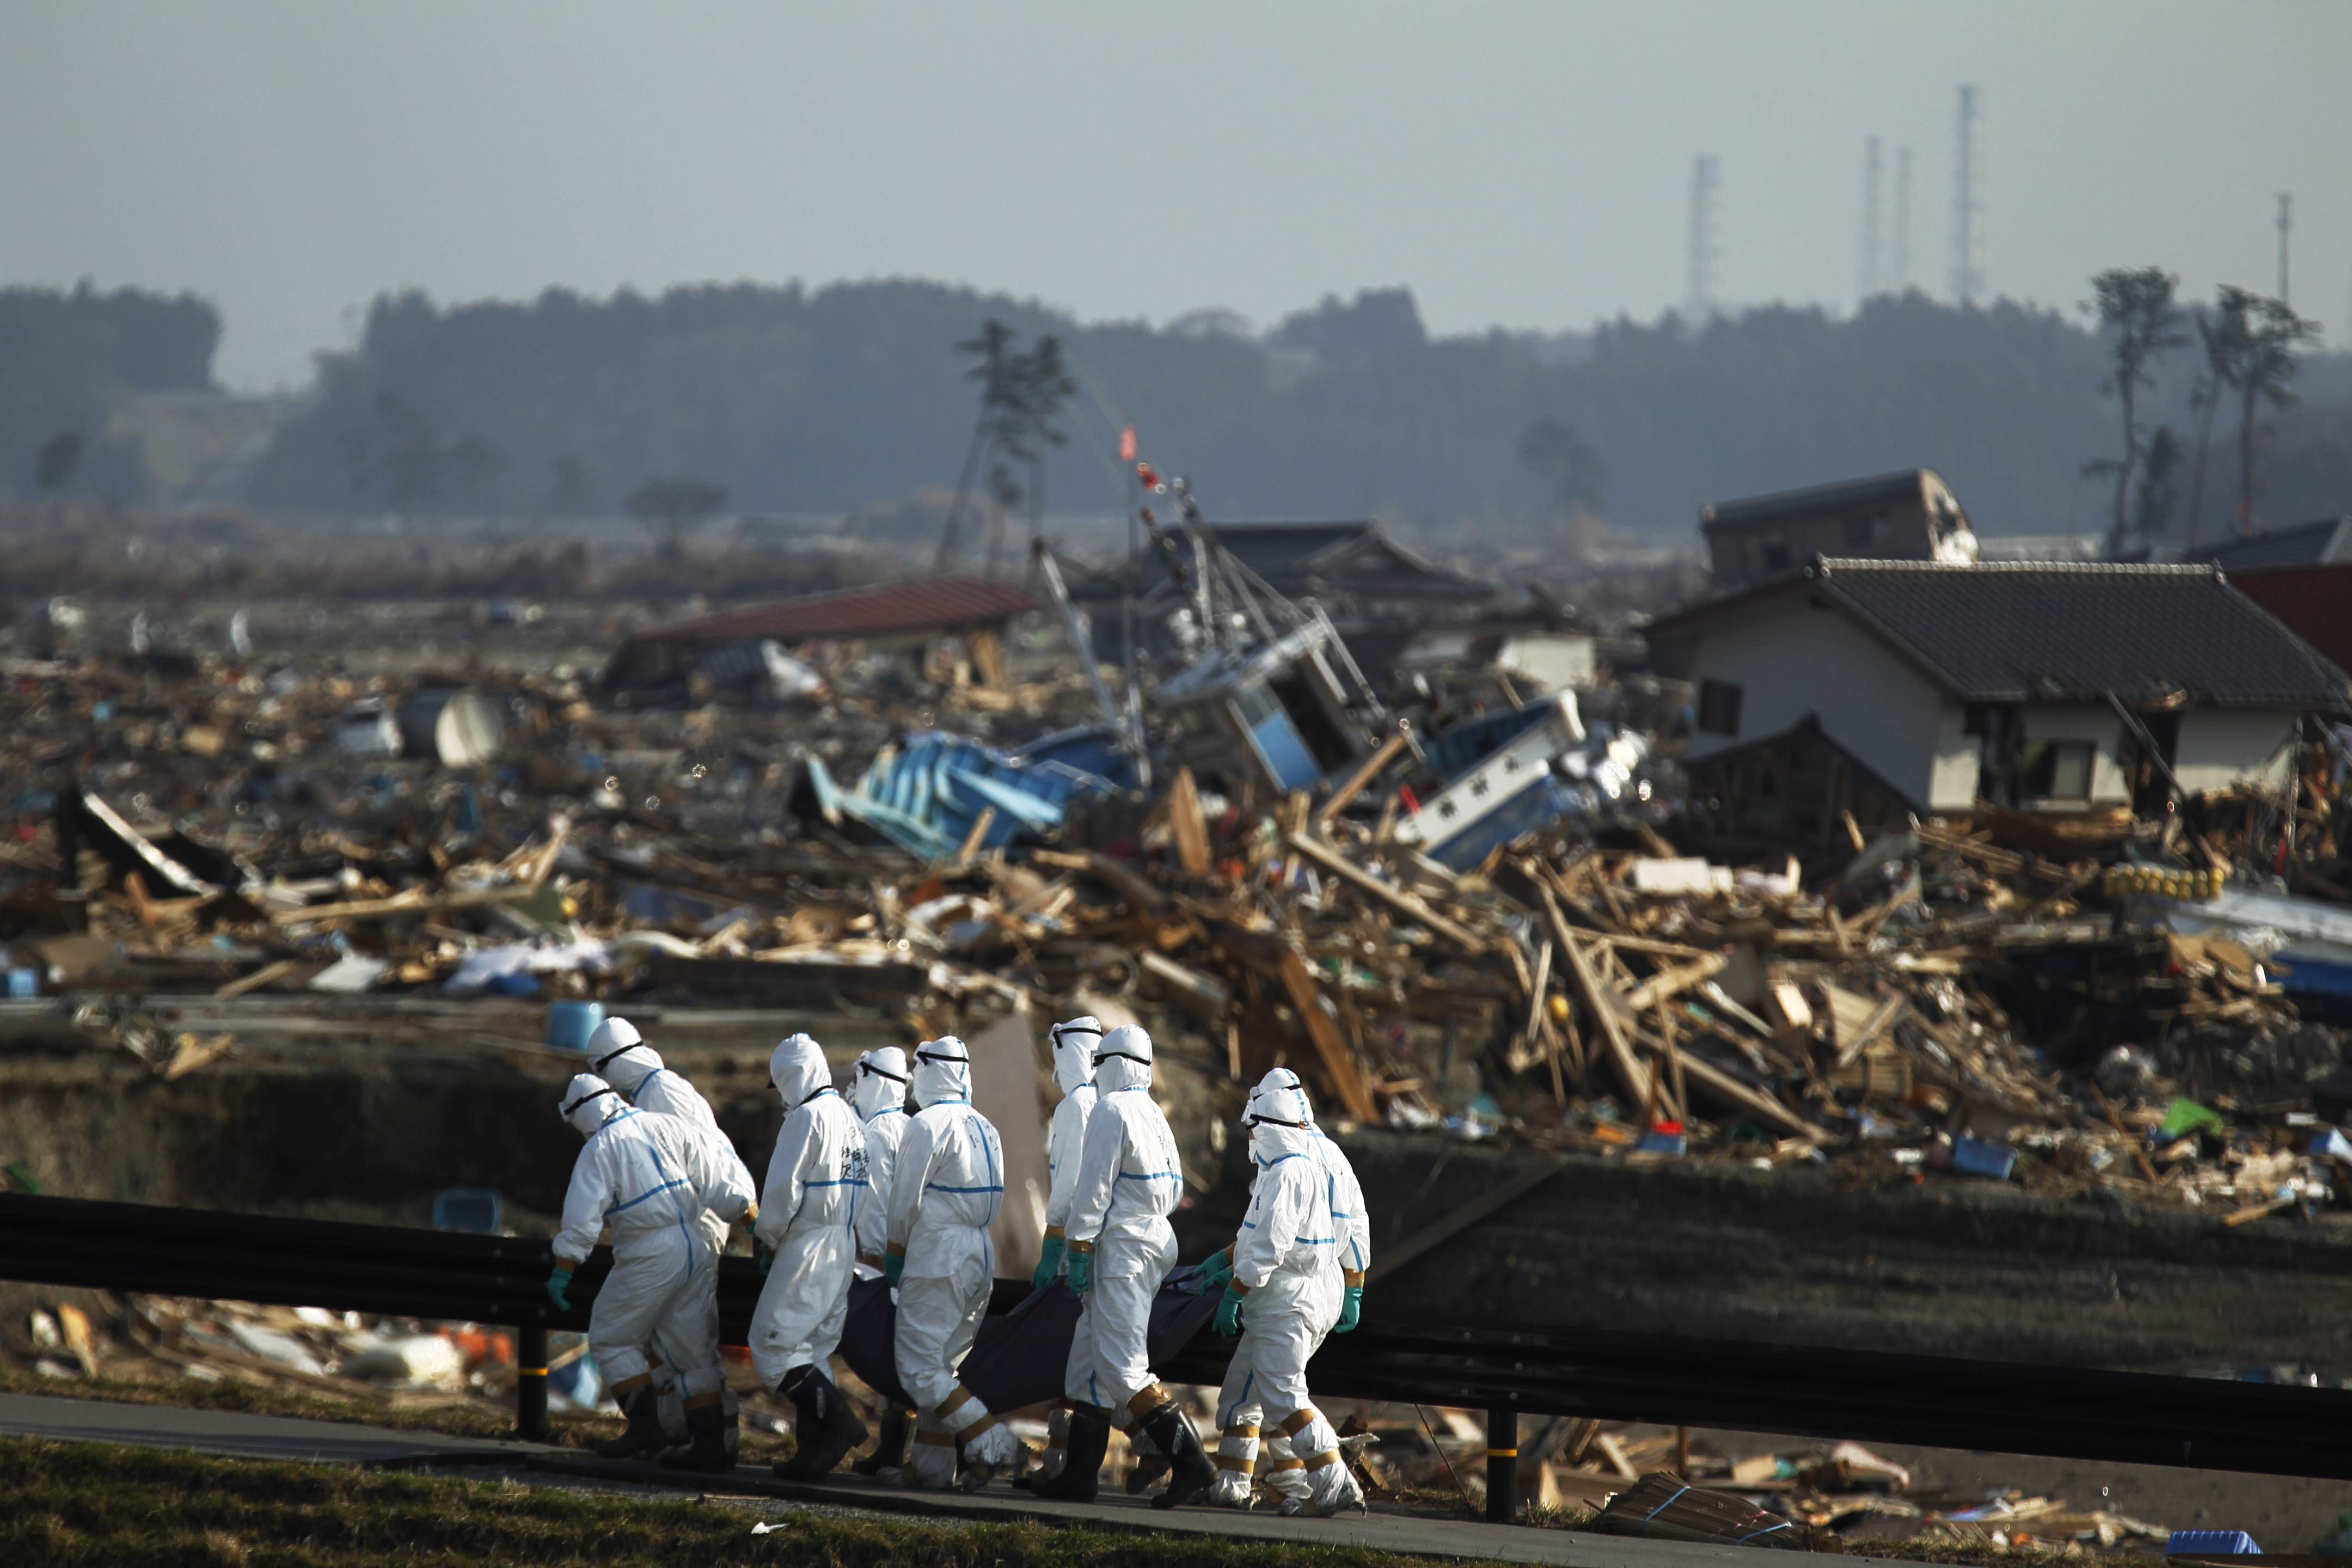 10 аварий на аэс. Авария на АЭС Фукусима-1. Авария на АЭС Фукусима-1 (Япония).. ЦУНАМИ В Японии 2011 Фукусима. Авария на АЭС Фукусима-1 (Япония, 2011)..